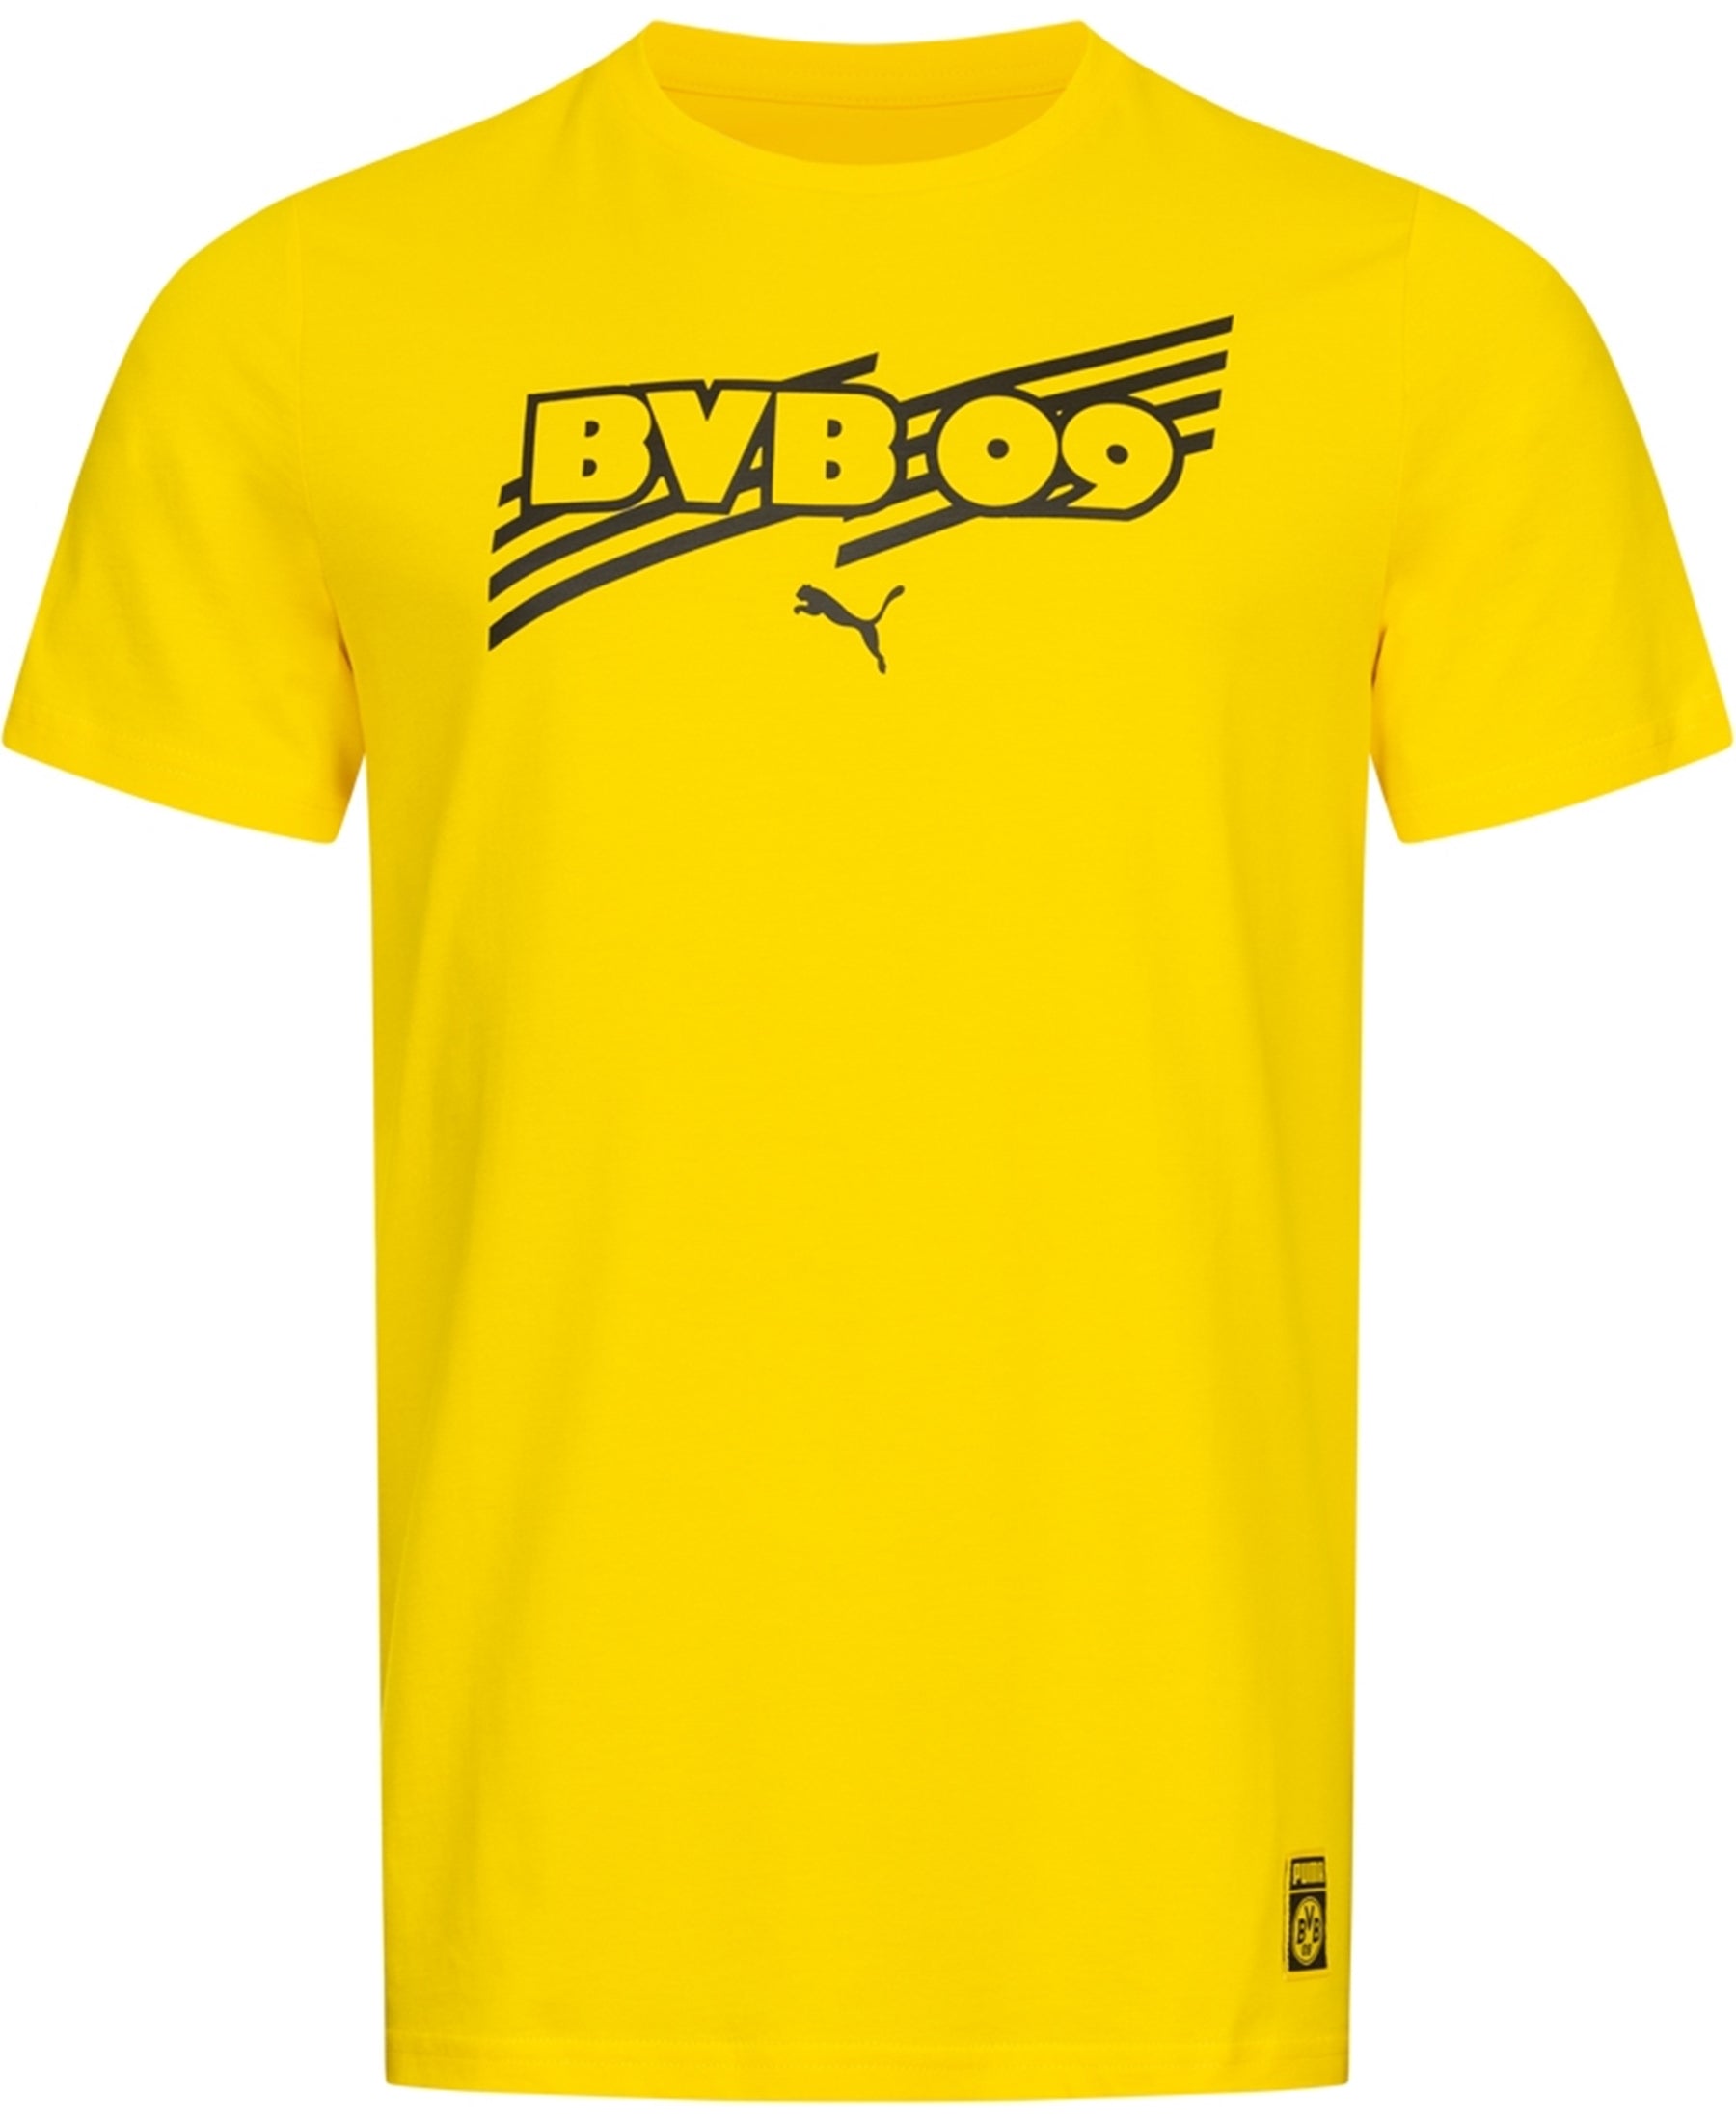 Mit dem Puma Borussia Dortmund BVB FTBLCORE T-Shirt (Artikelnummer 759992-01) bringst du deine Begeisterung für den Verein zum Ausdruck. Dieses hochwertige Shirt ist ein Must-Have für jeden BVB-Fan. Zeige deine Treue und Stolz in den Vereinsfarben. Bequem, langlebig und stylisch – das perfekte Kleidungsstück, um deine Unterstützung zu zeigen. Bestelle noch heute bei SHOP4TEAMSPORT und sei bereit für die nächste Saison!